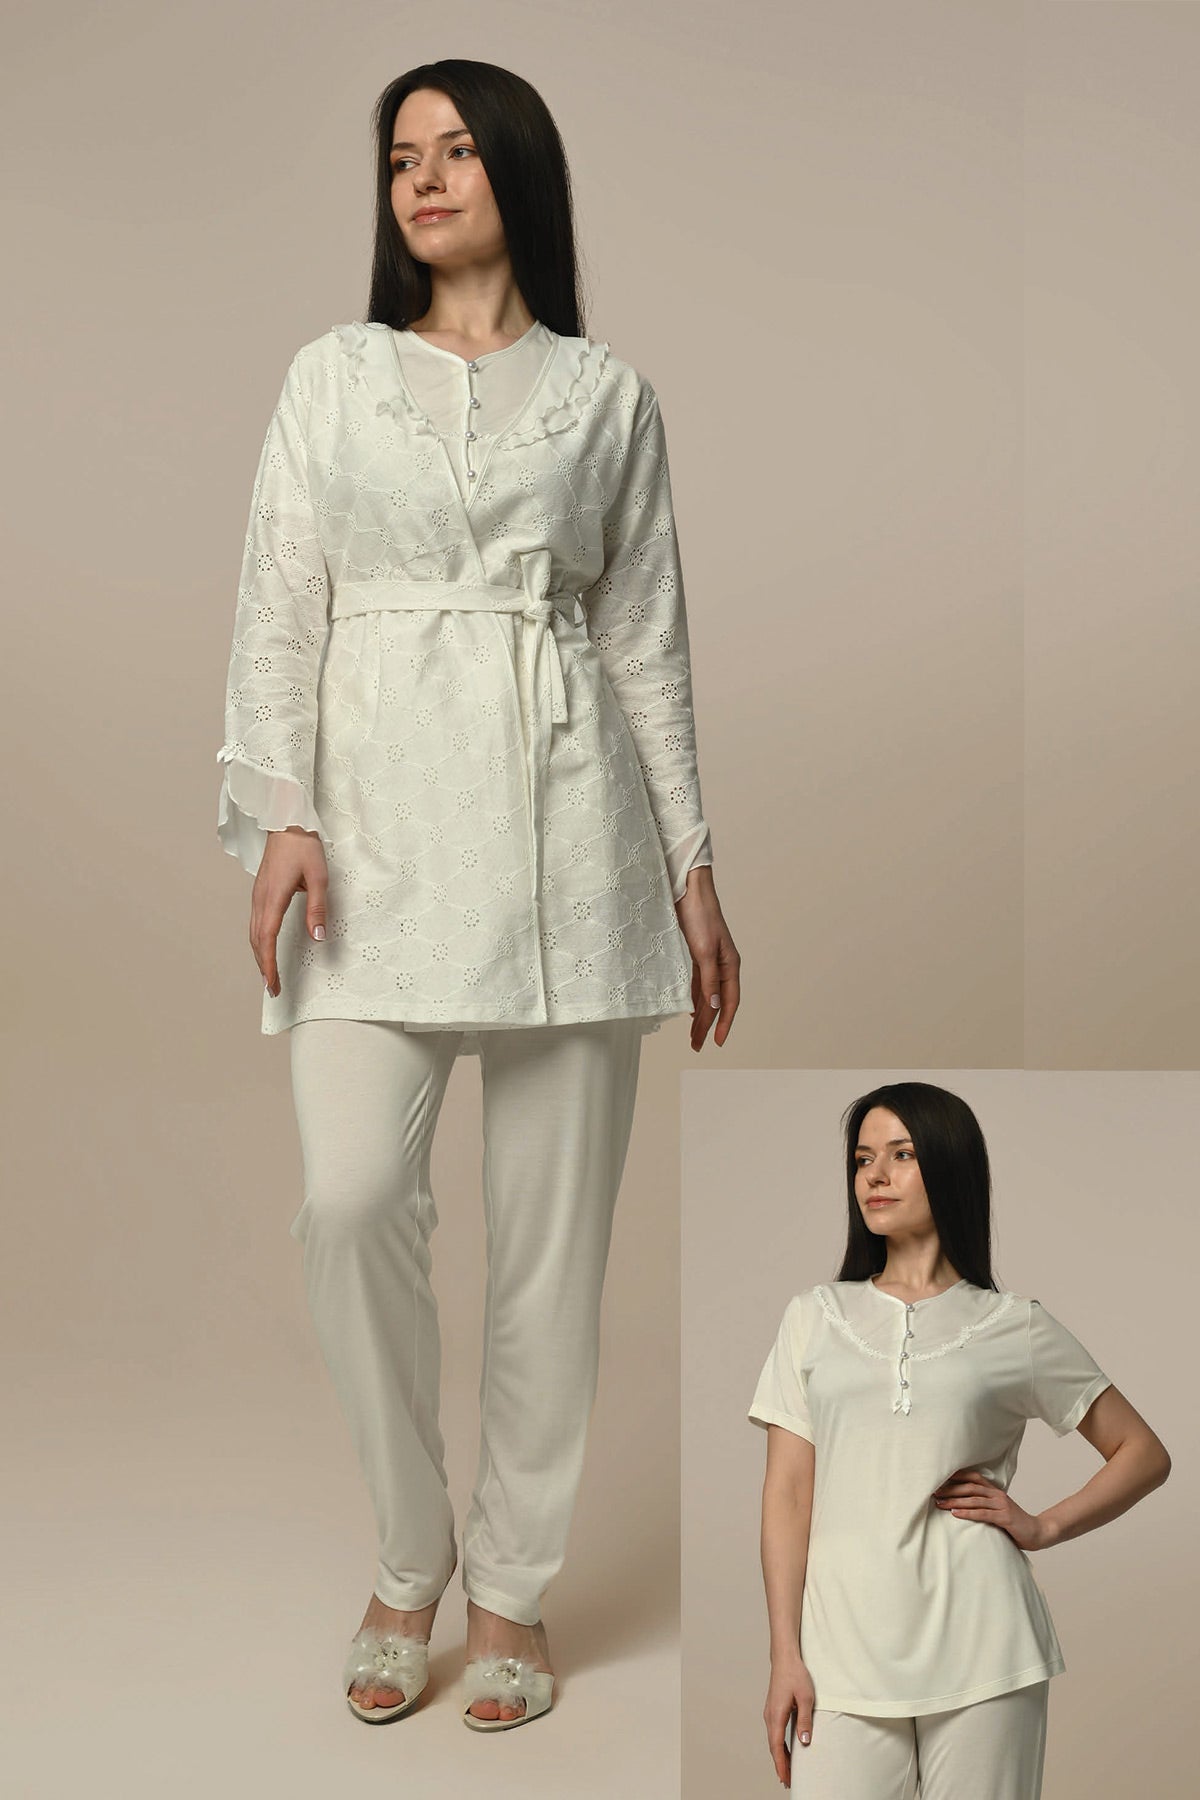 Tulle Lace 3-Pieces Maternity & Nursing Pajamas With Jacquard Robe Ecru - 24330